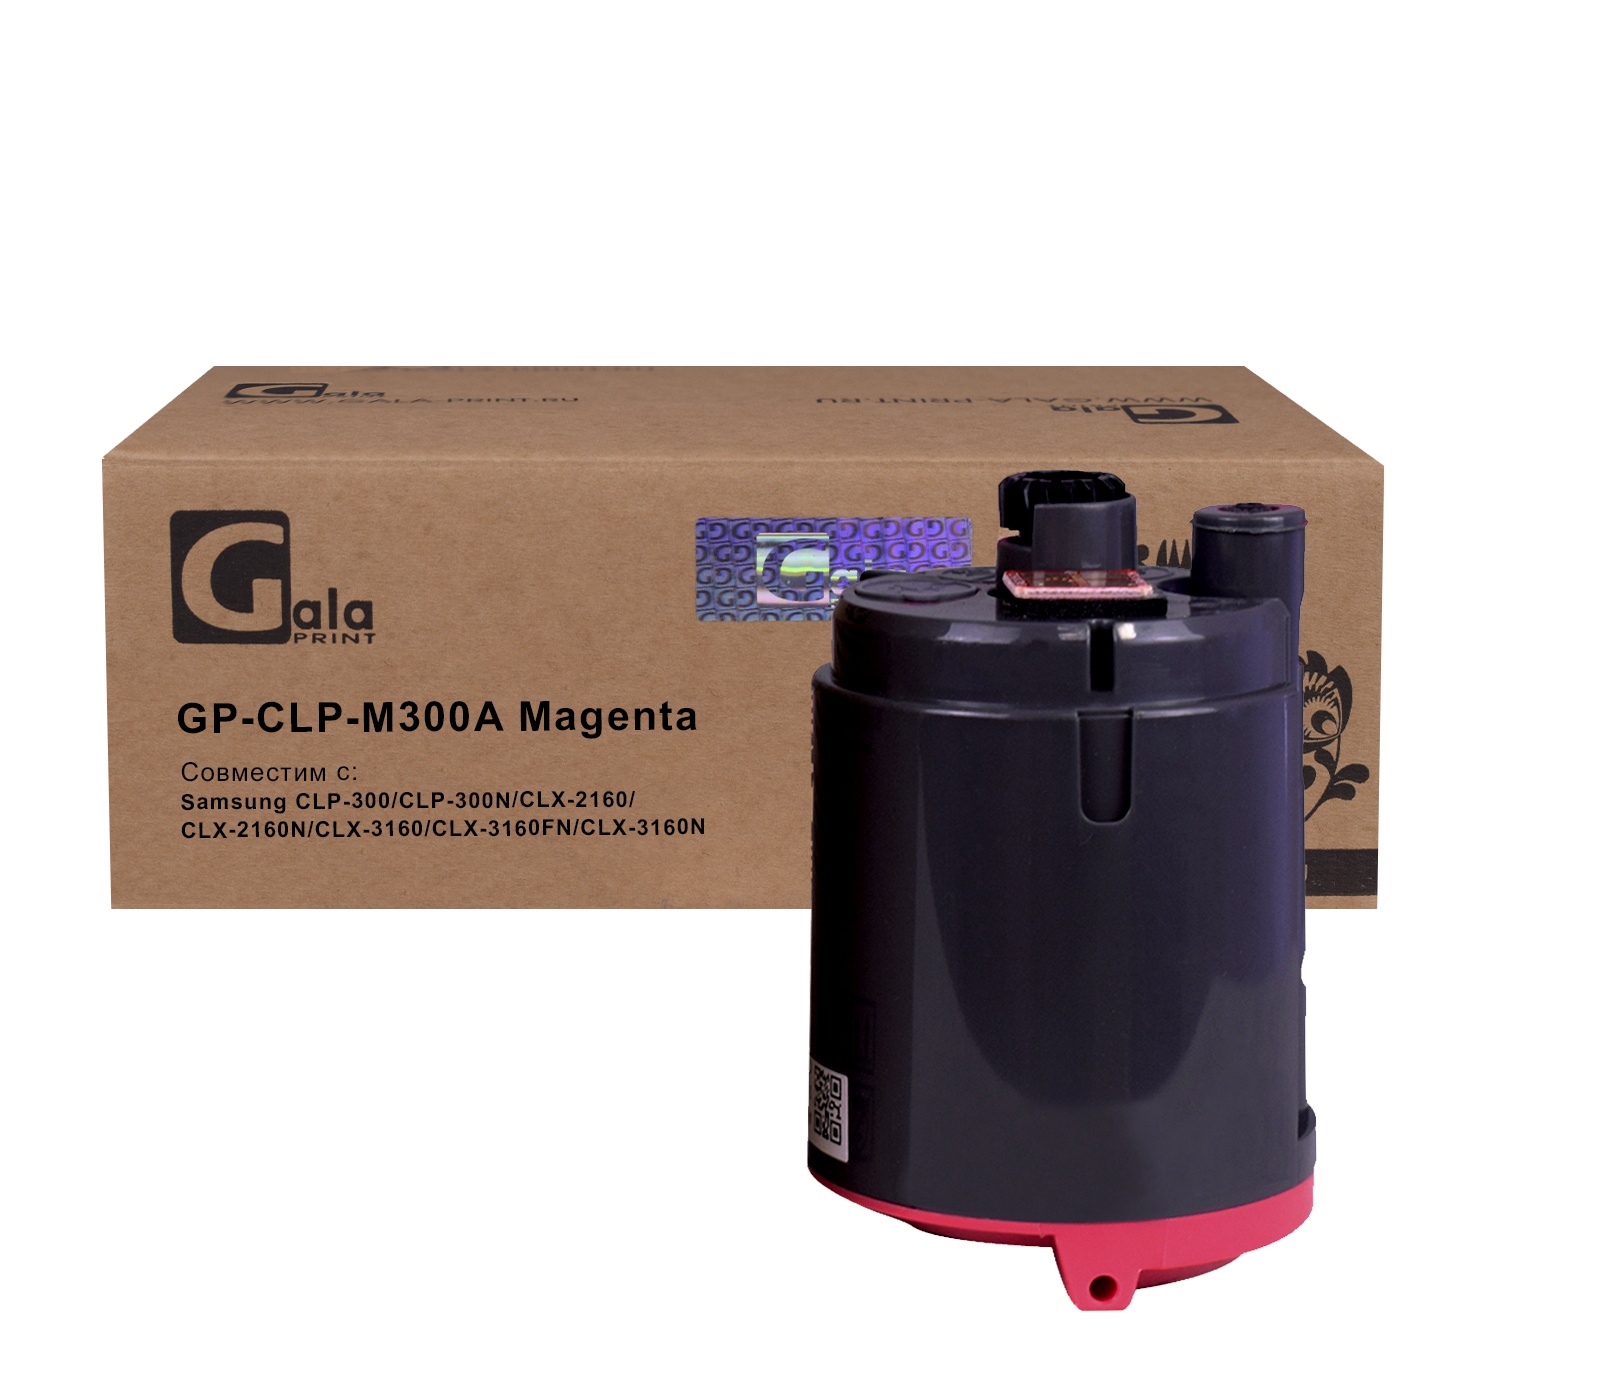 Картридж GP-CLP-M300A для принтеров Samsung CLP-300/CLP-300N/CLX-2160/CLX-2160N/CLX-3160/CLX-3160FN/CLX-3160N Magenta 1000 копий GalaPrint